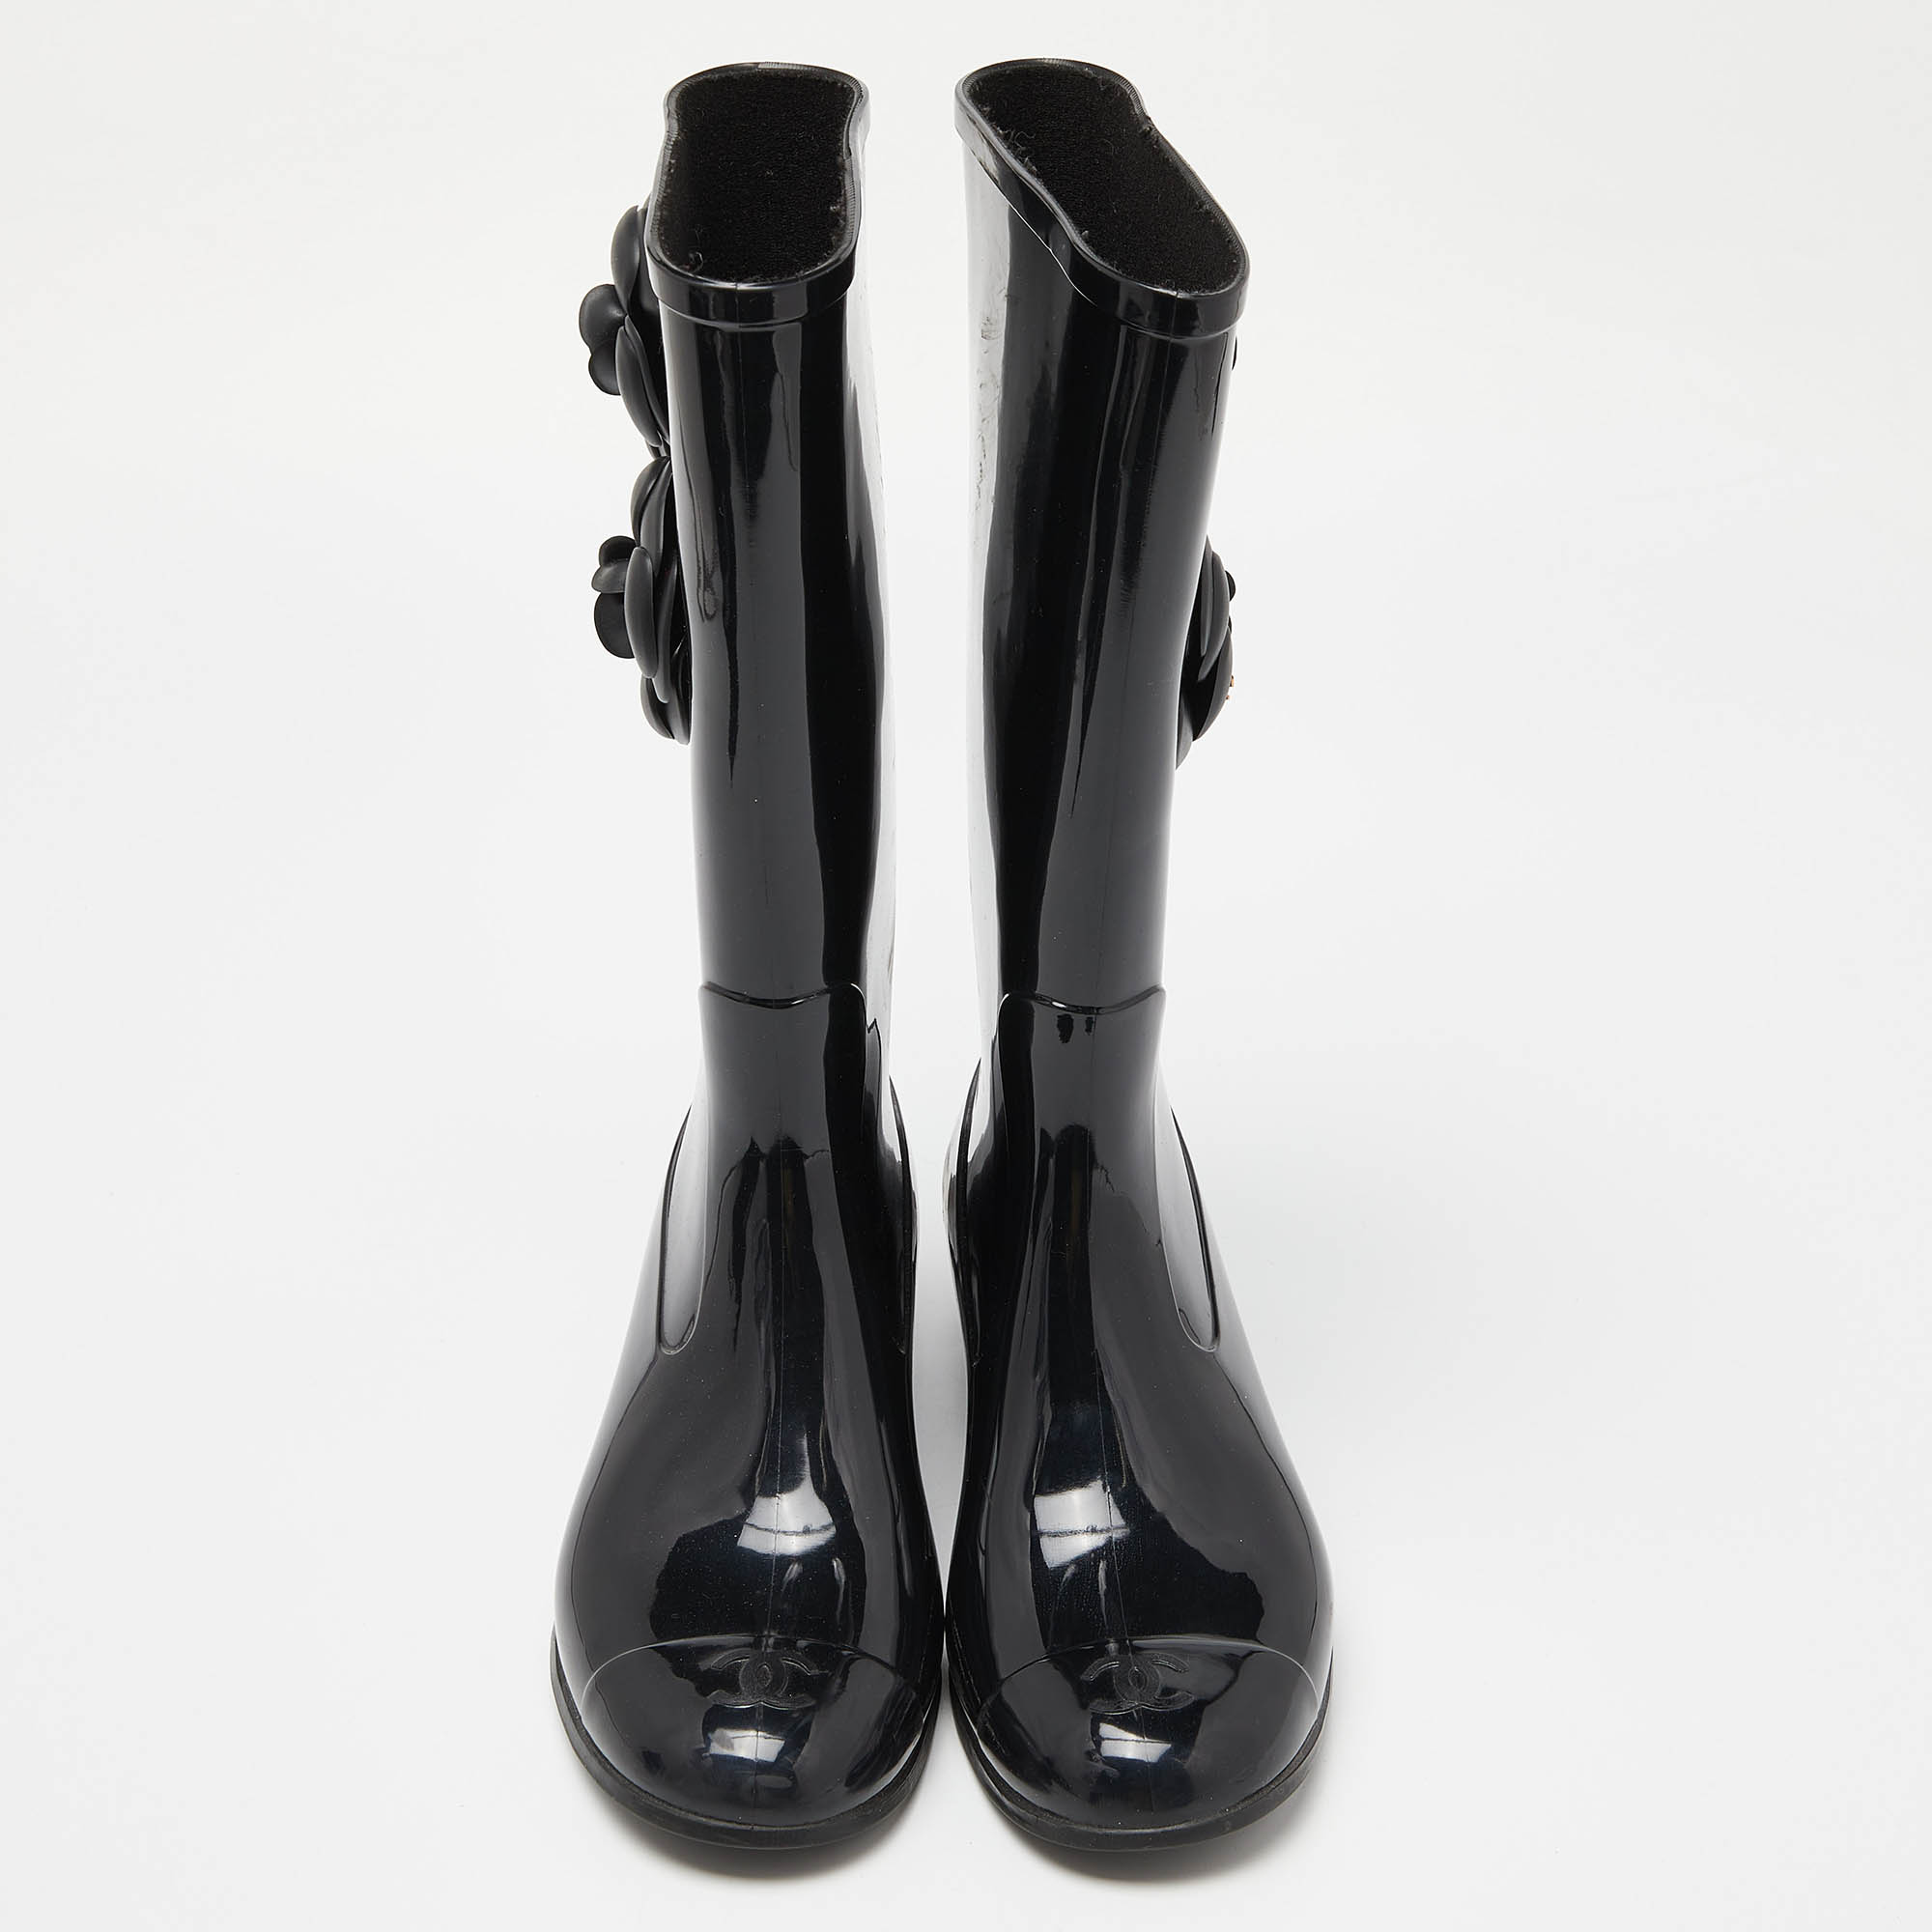 Chanel Black Rubber CC Camellia Rain Boots Size 38